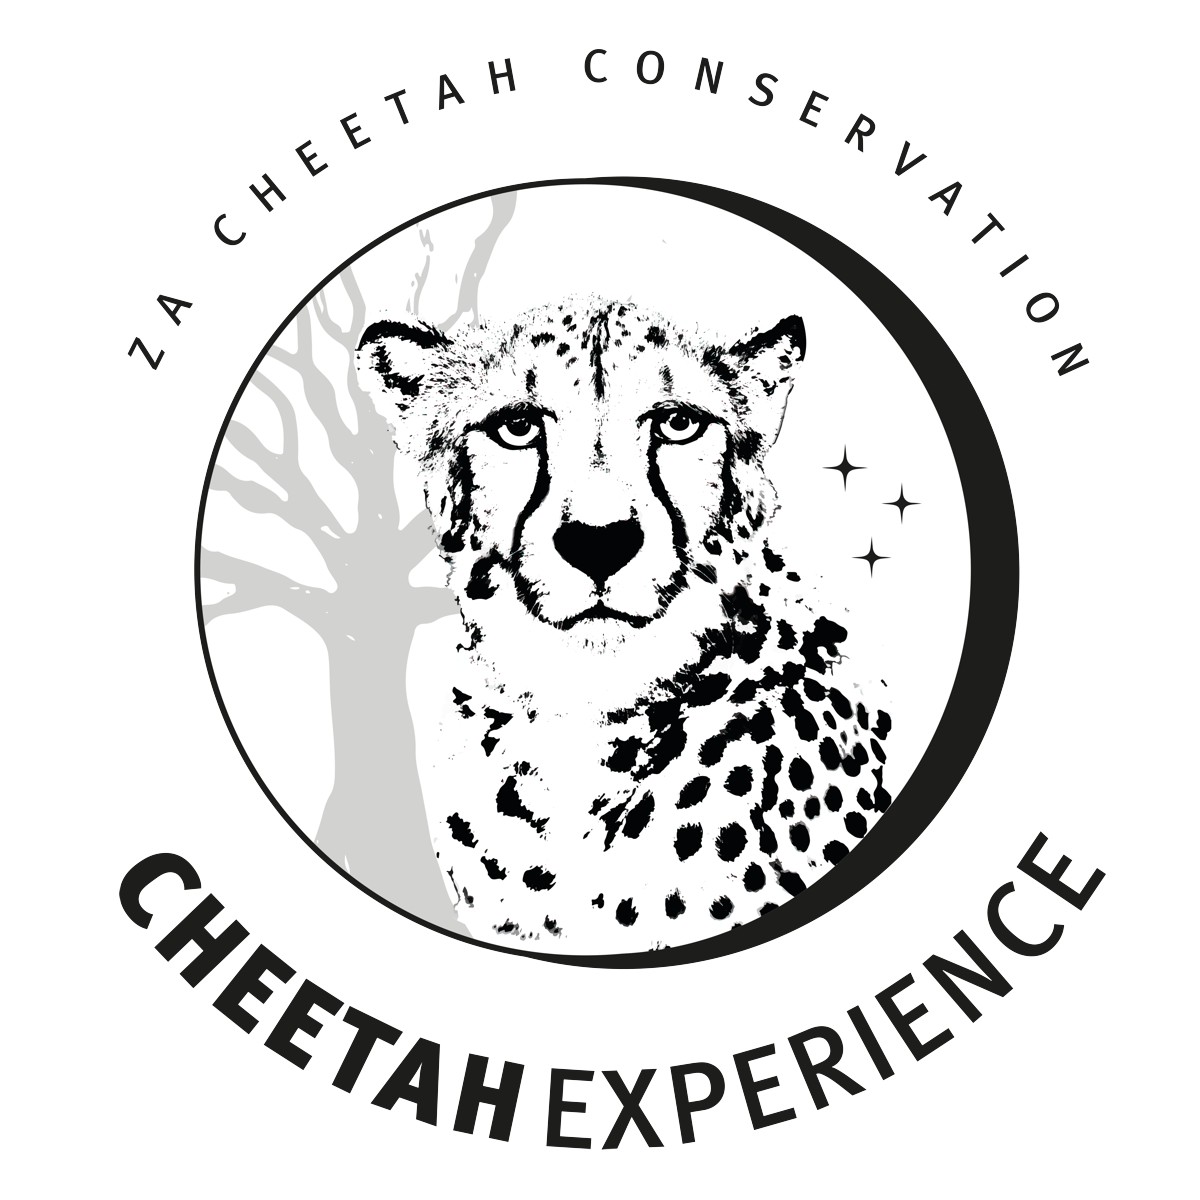 ZA cheetah logo